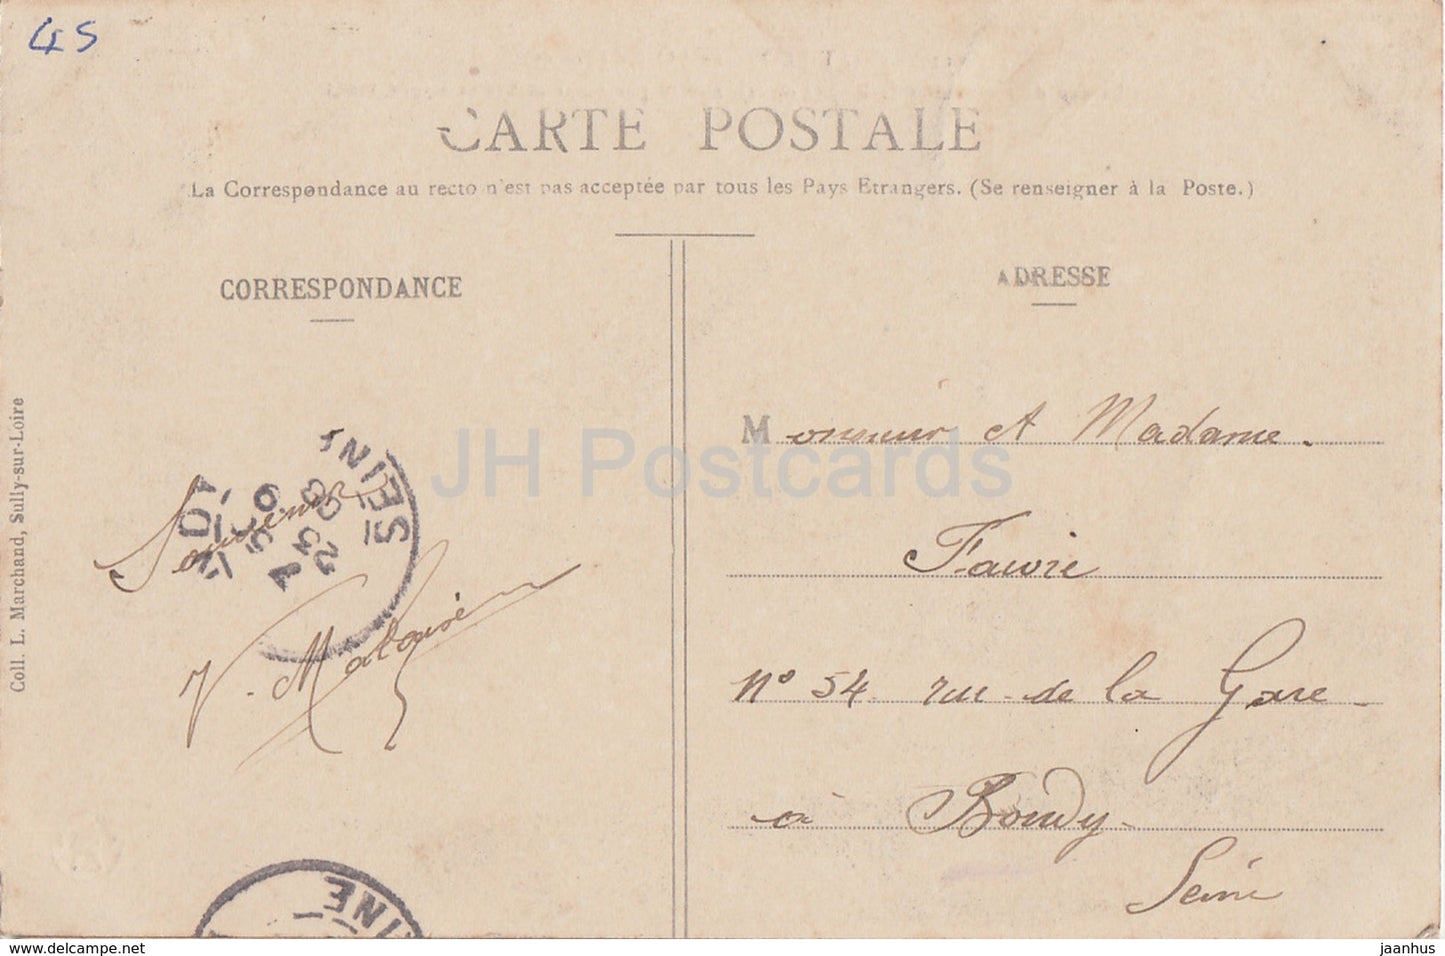 Chatillon sur Loire - Chateau de Courcelles le Roy - castle - 123 - old postcard - 1908 - France - used